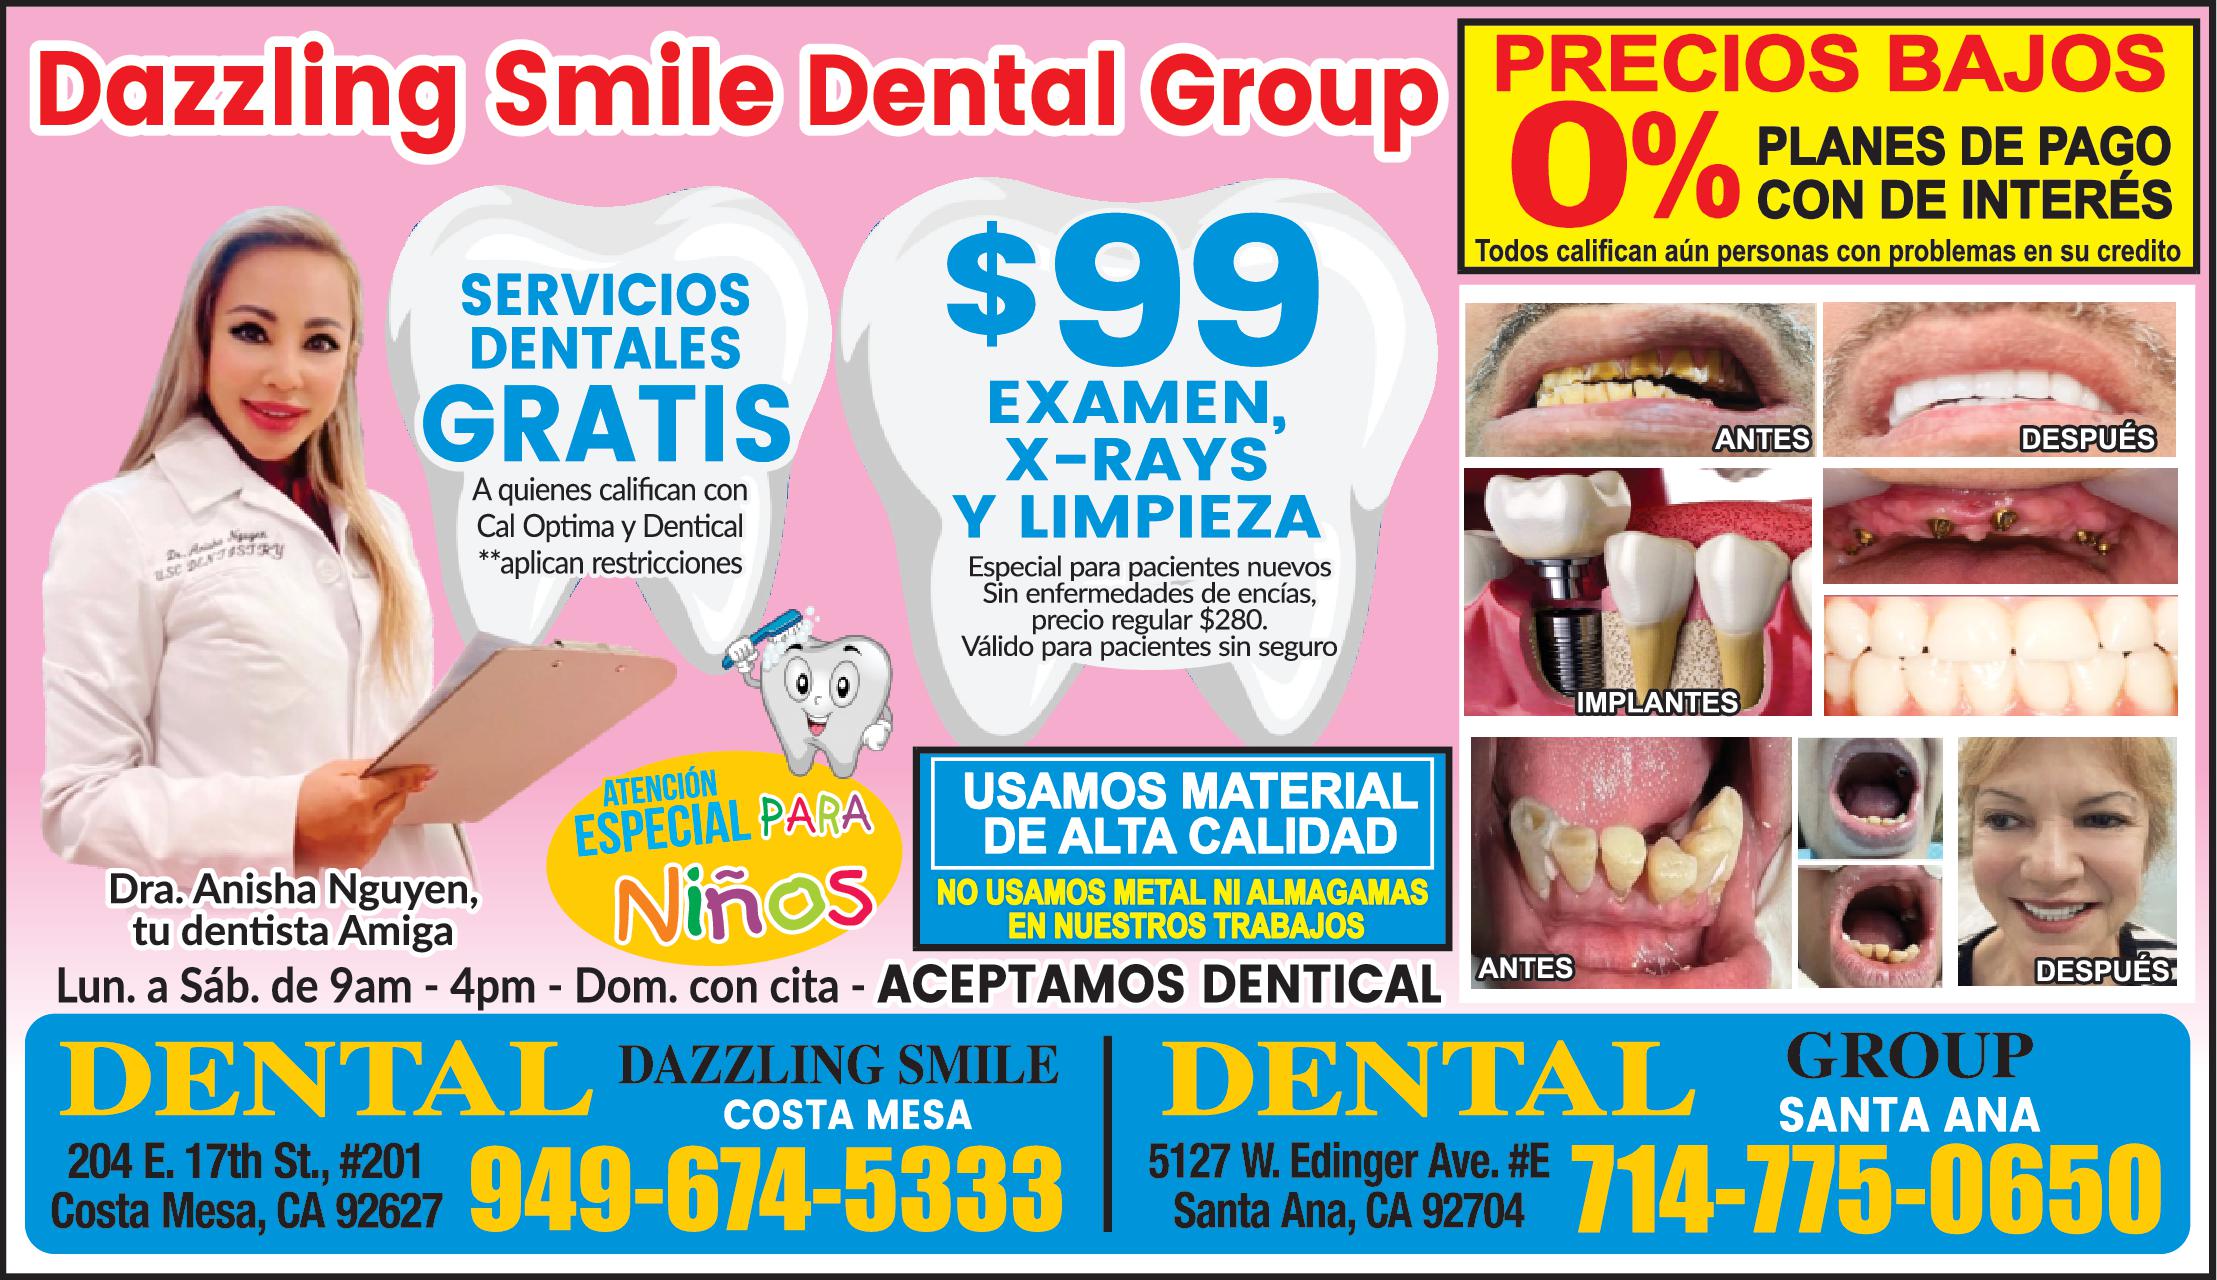 Dazzling Smile Dental Group precios bajos PLANES DE PAGO CON 0% DE INTERES SERVICIOS DENTALES GRATIS $99 EXAMEN, X-RAYS Y LIMPIEZA USAMOS MATERIAL DE ALTA CALIDAD NO USAMOS METAL NI AMALGAMAS EN NUESTROS TRABAJOS Dra. Anisha Nguyen, Tu dentista Amiga Lun. a Sab. de 9am - 4pm- Dom. con cita Aceptamos DENTICAL DENTAL DAZZLING SMILE 204 E. 17 th., #201 Costa Mesa, CA 92627